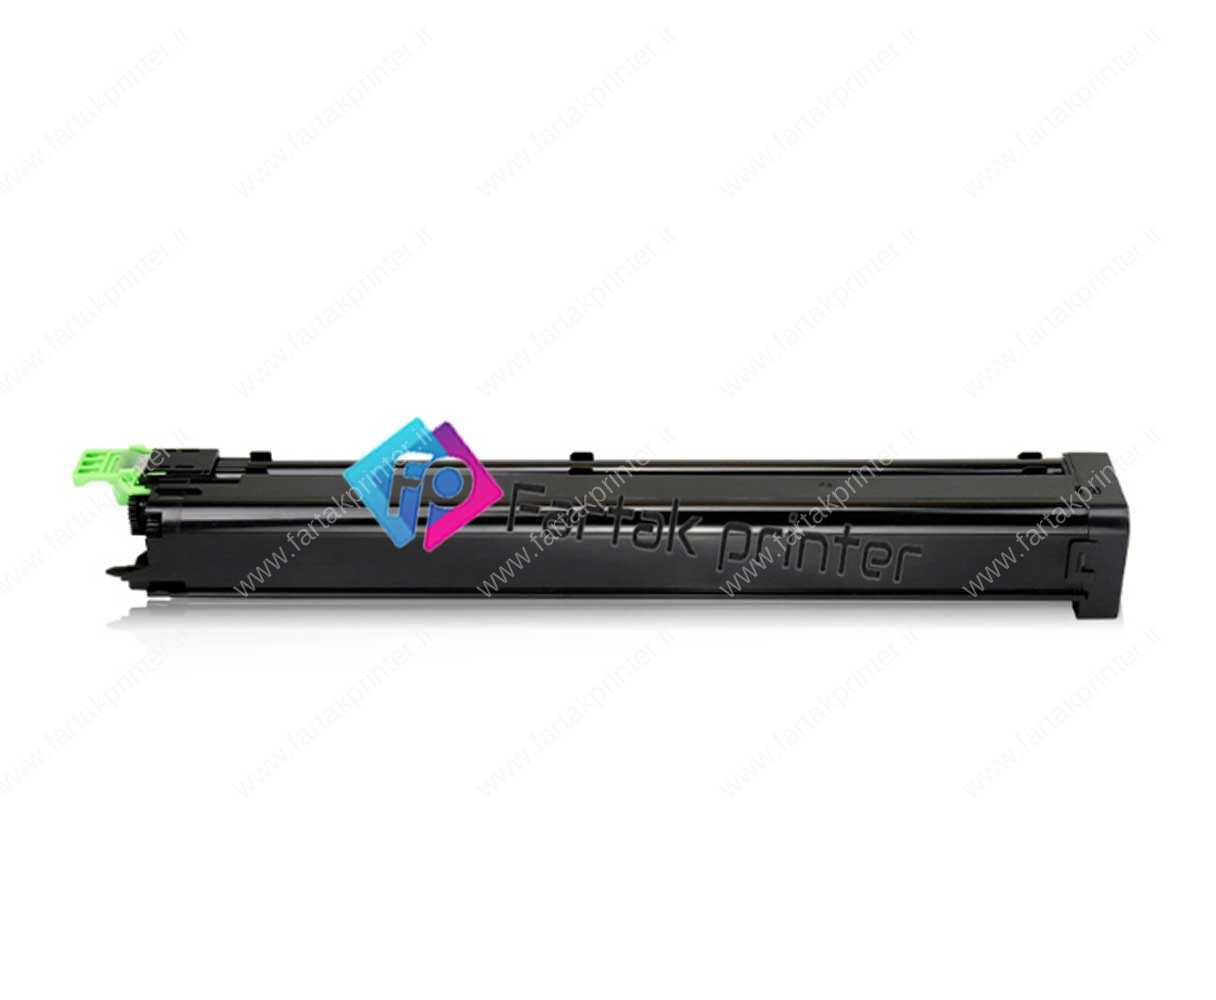 Sharp MX-31 Toner Cartridge